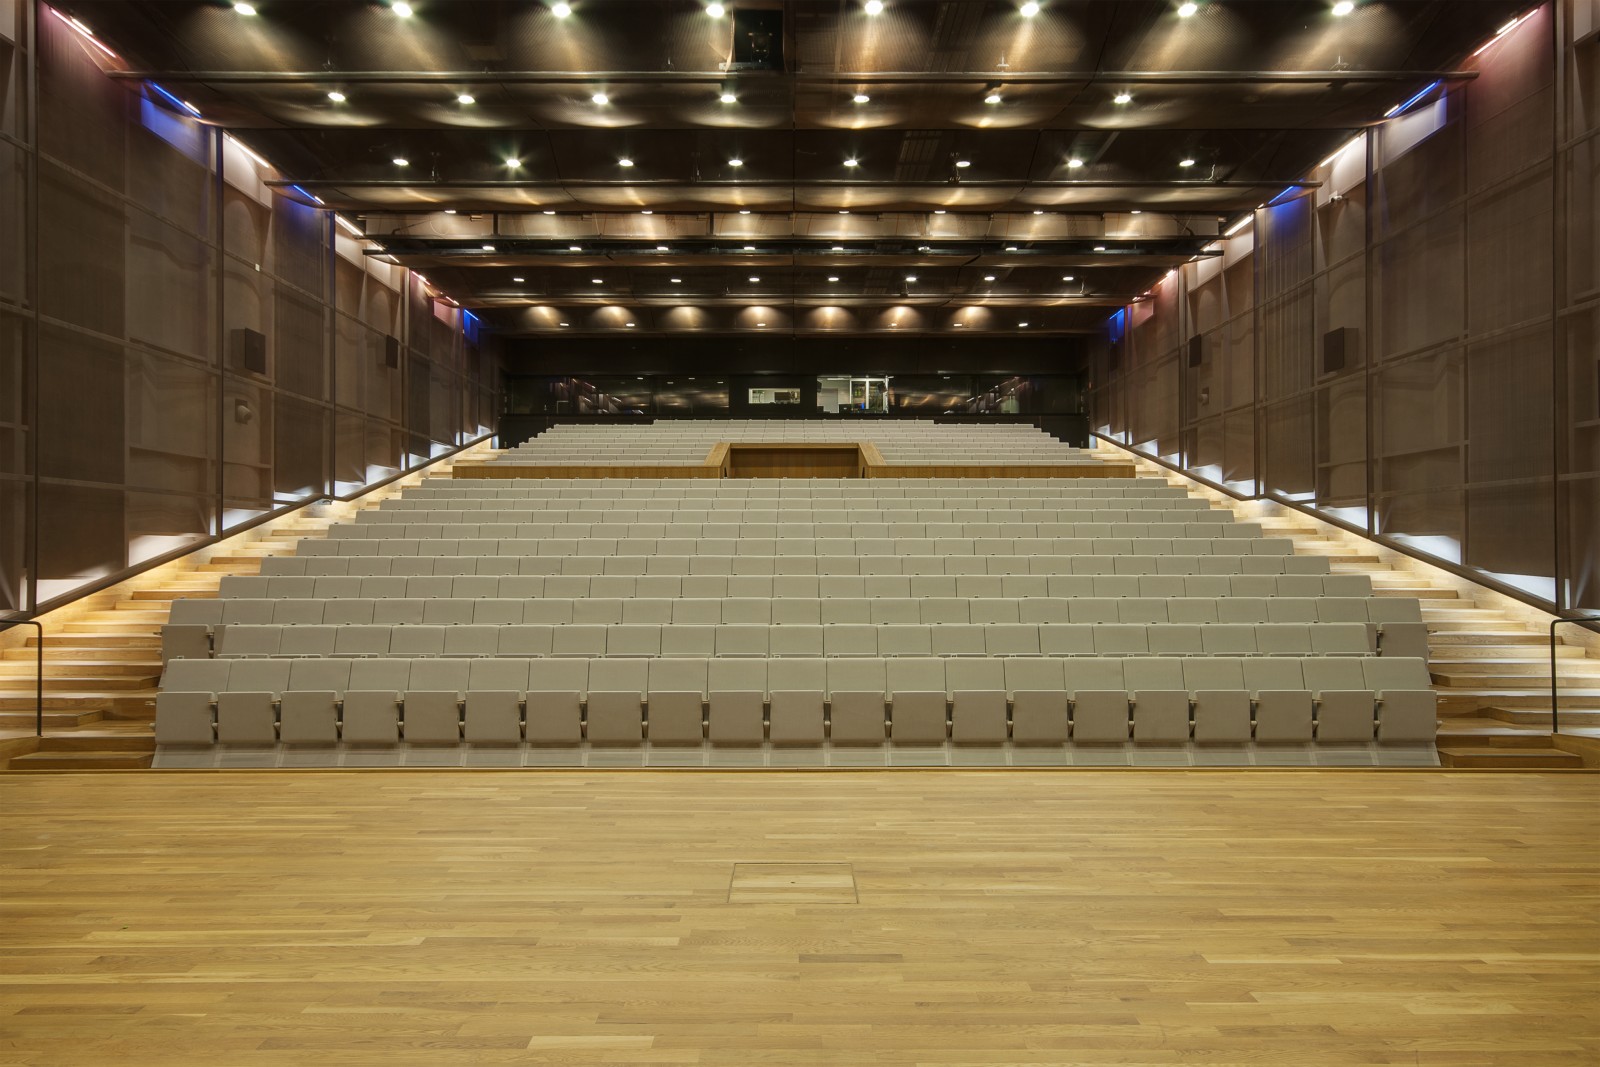 Widok na audytorium - salę koncertową w Muzeum POLIN - widok ze sceny na krzesła dla widowni